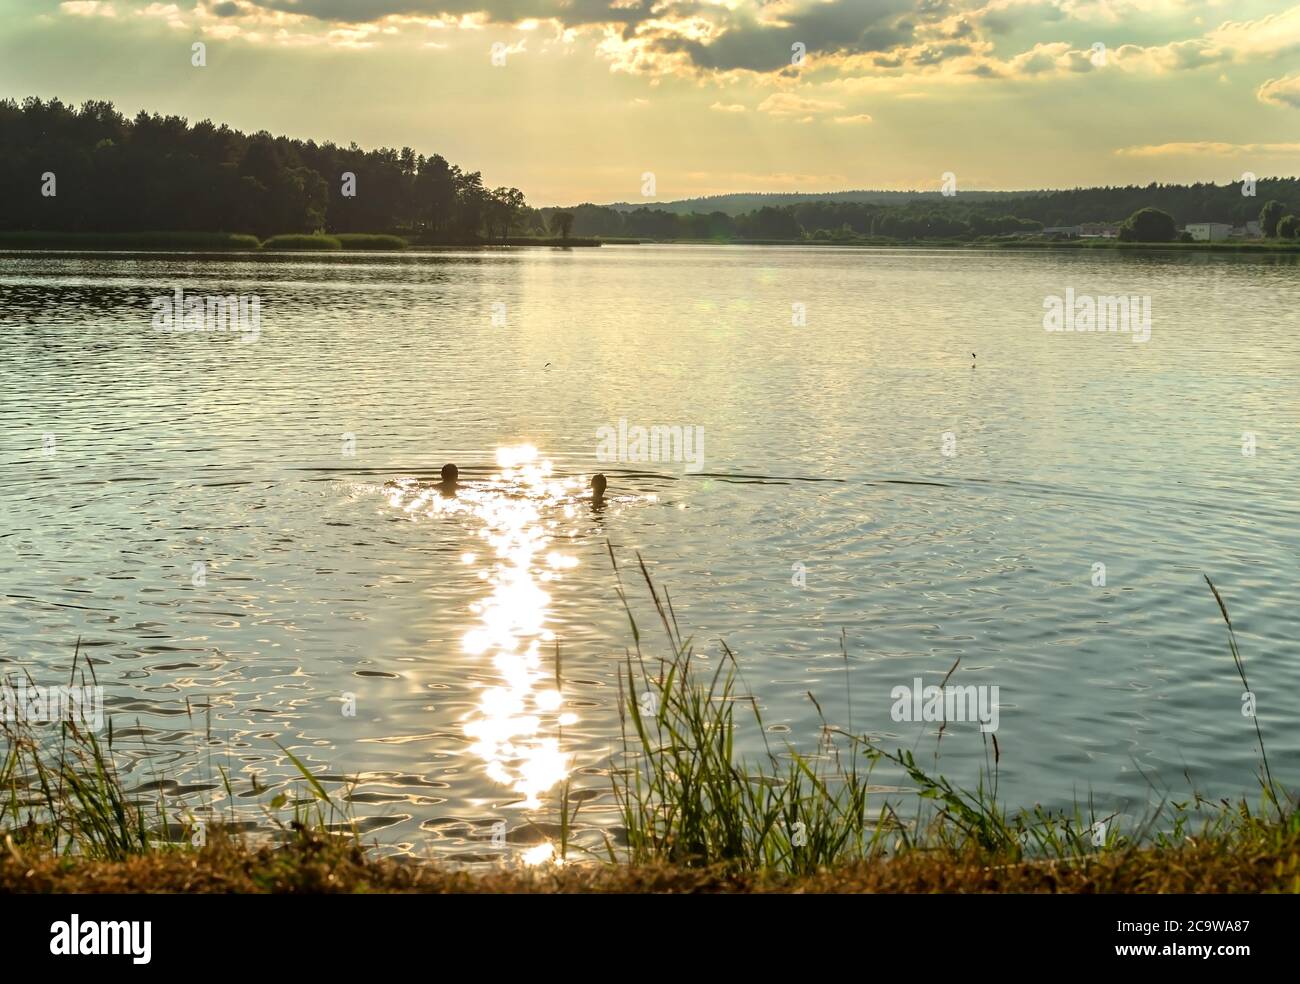 Sonnenuntergang, abendliche Reflexion der Sonne im Wasser, schöne Sommerlandschaft Stockfoto